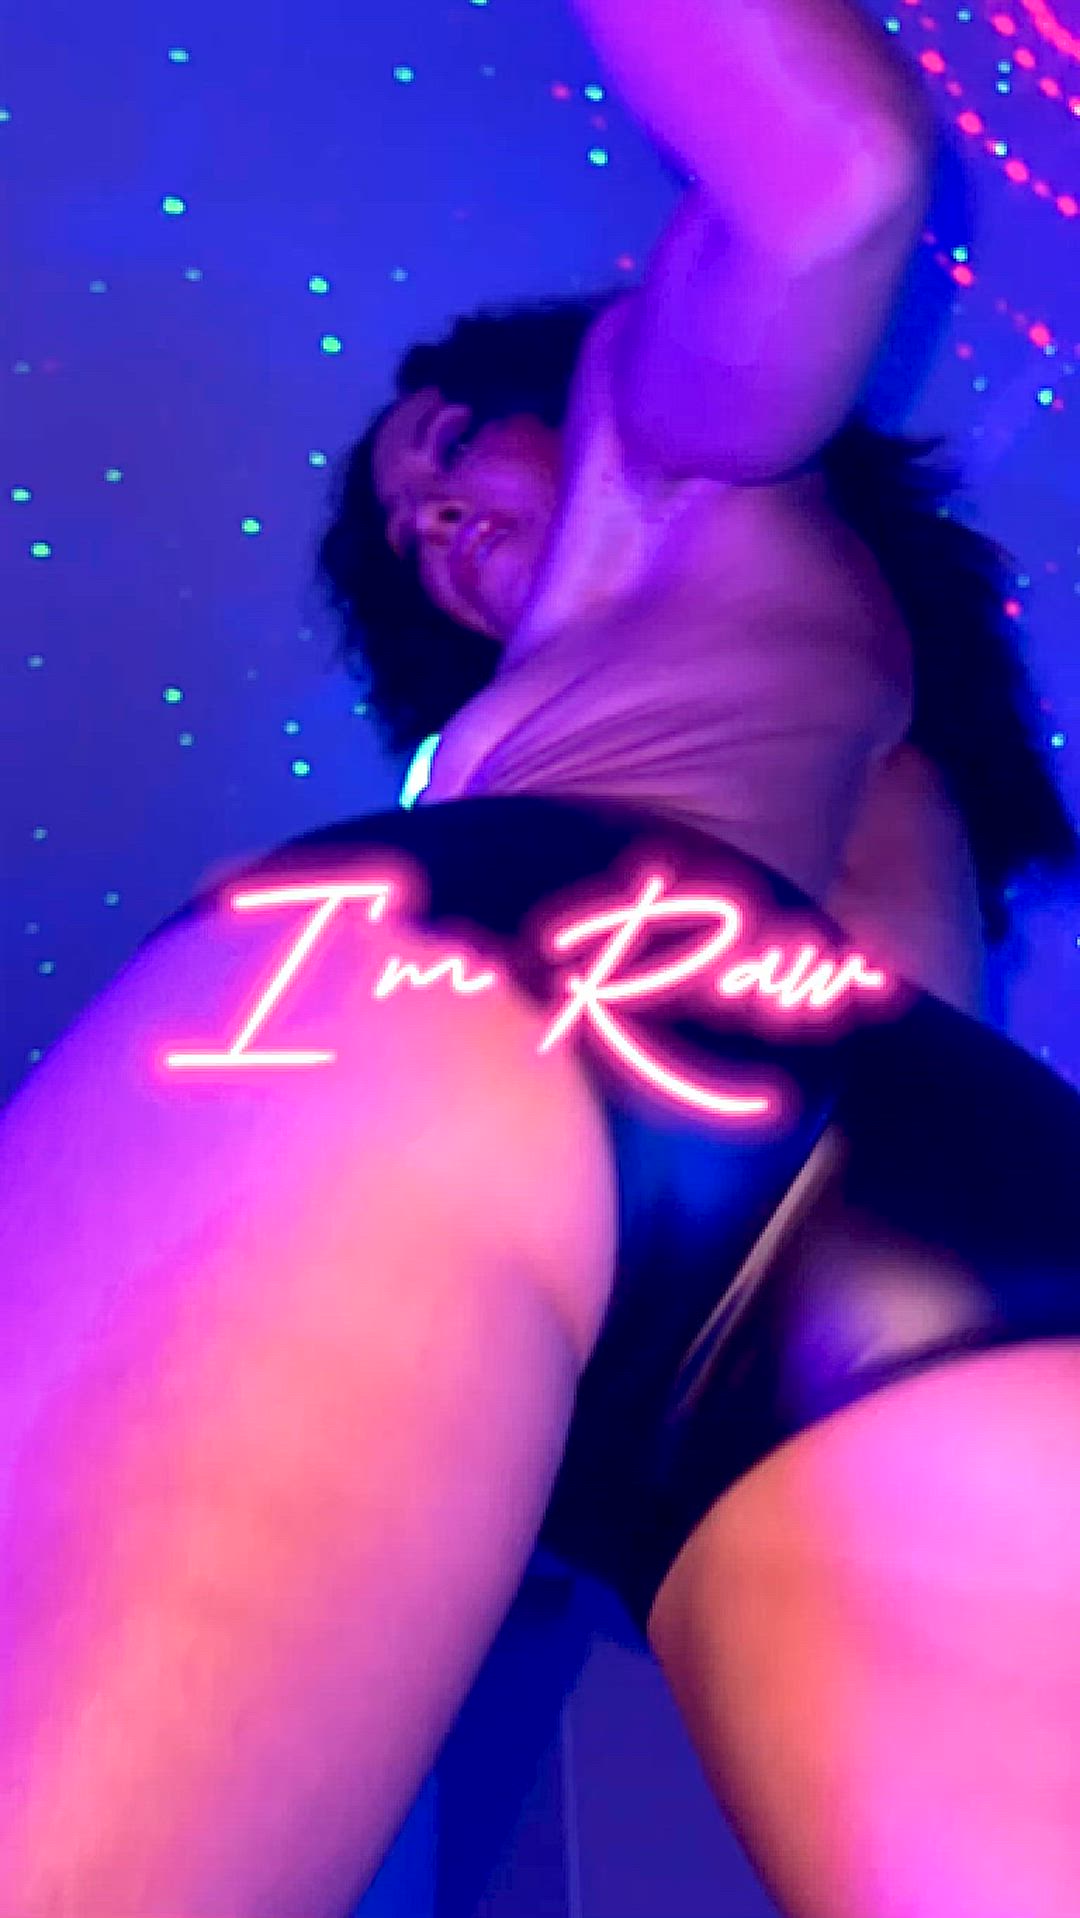 Ass porn video with onlyfans model petitepopstar <strong>@petitepopstar</strong>